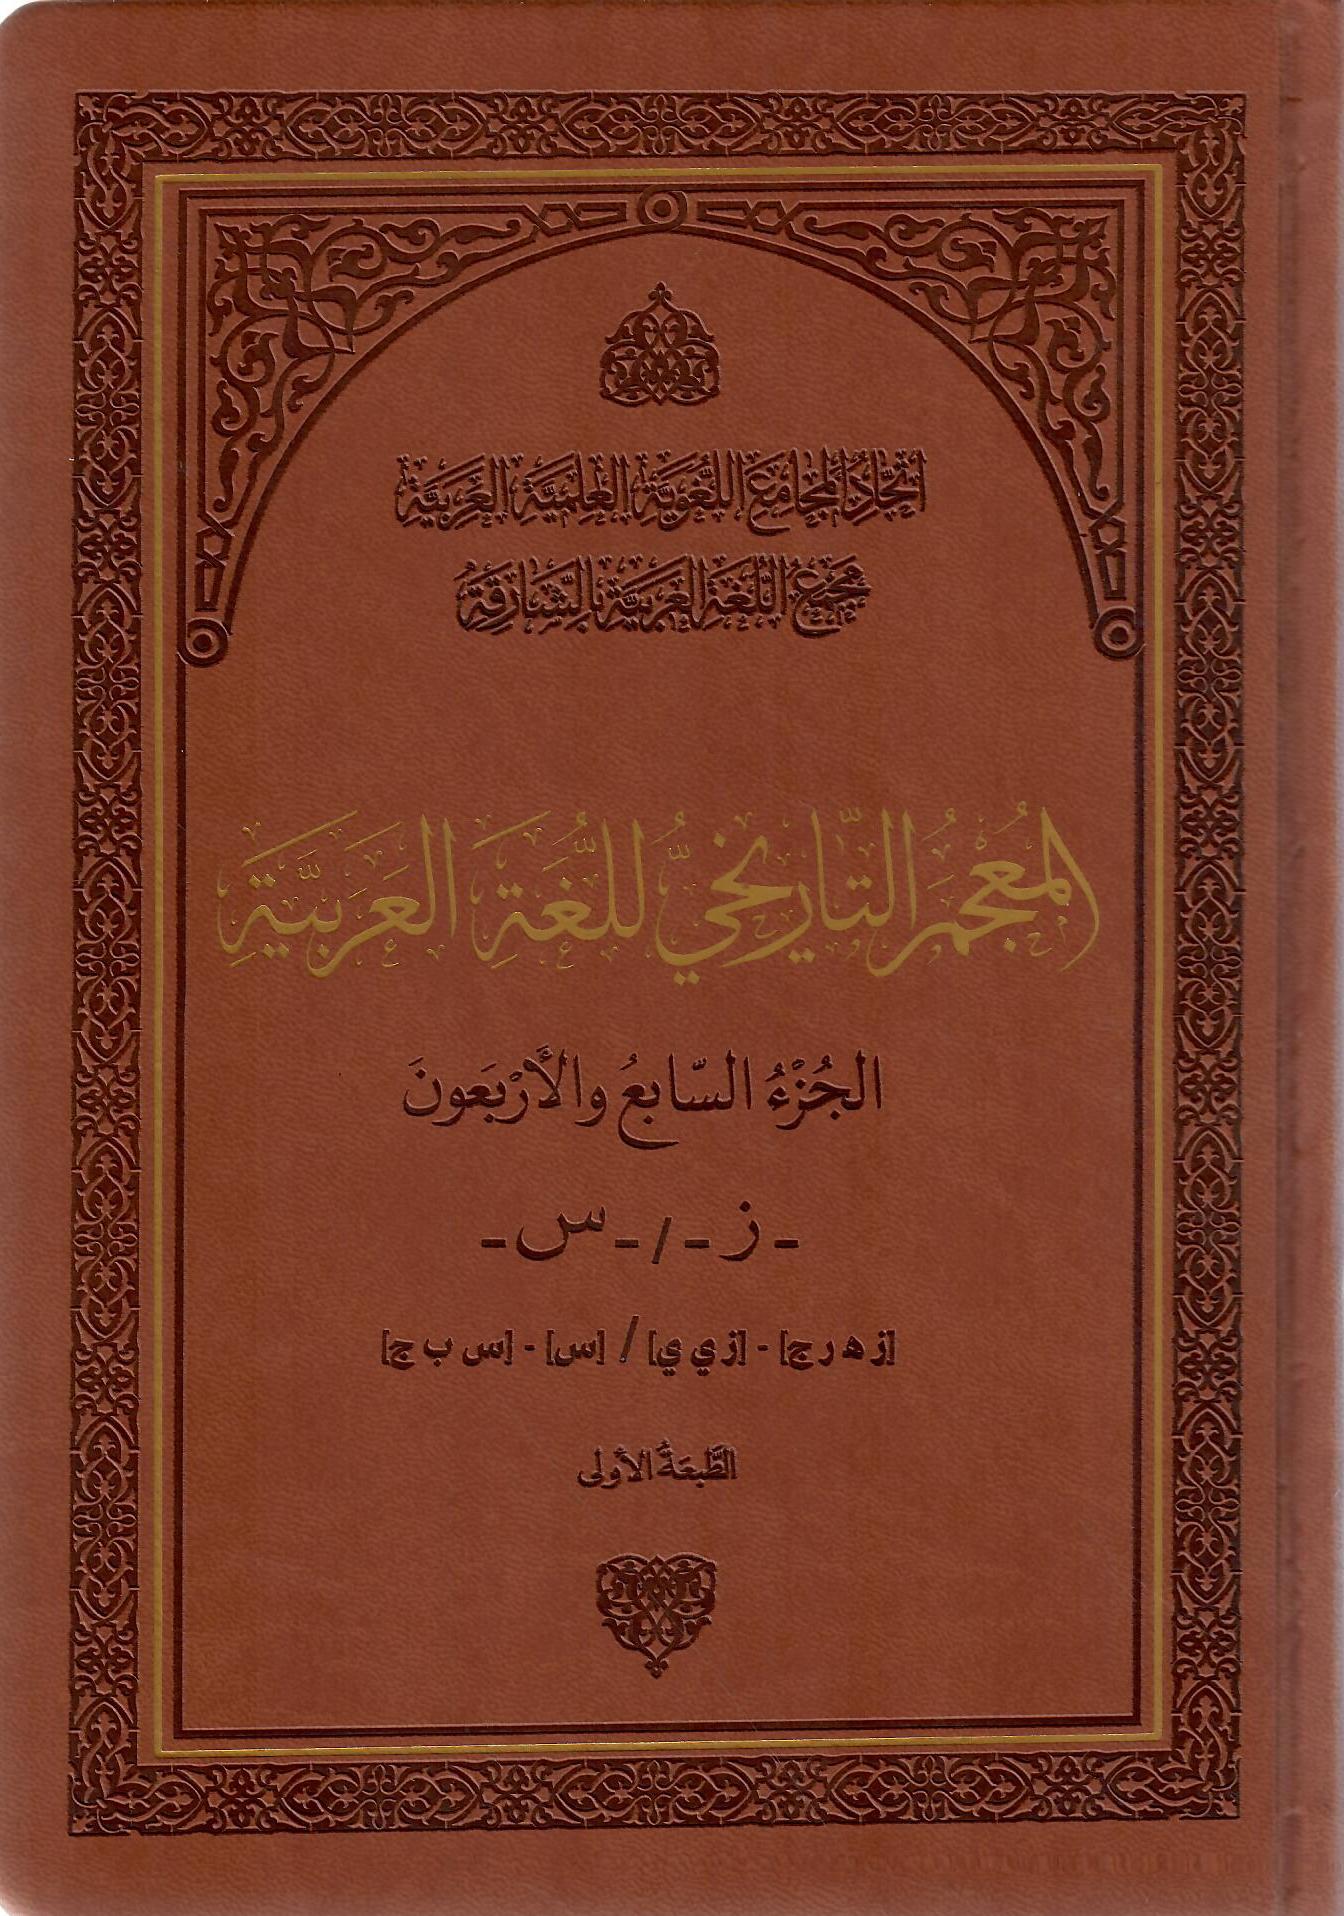 المعجم التاريخي للغة العربية الجزء السابع والأربعون